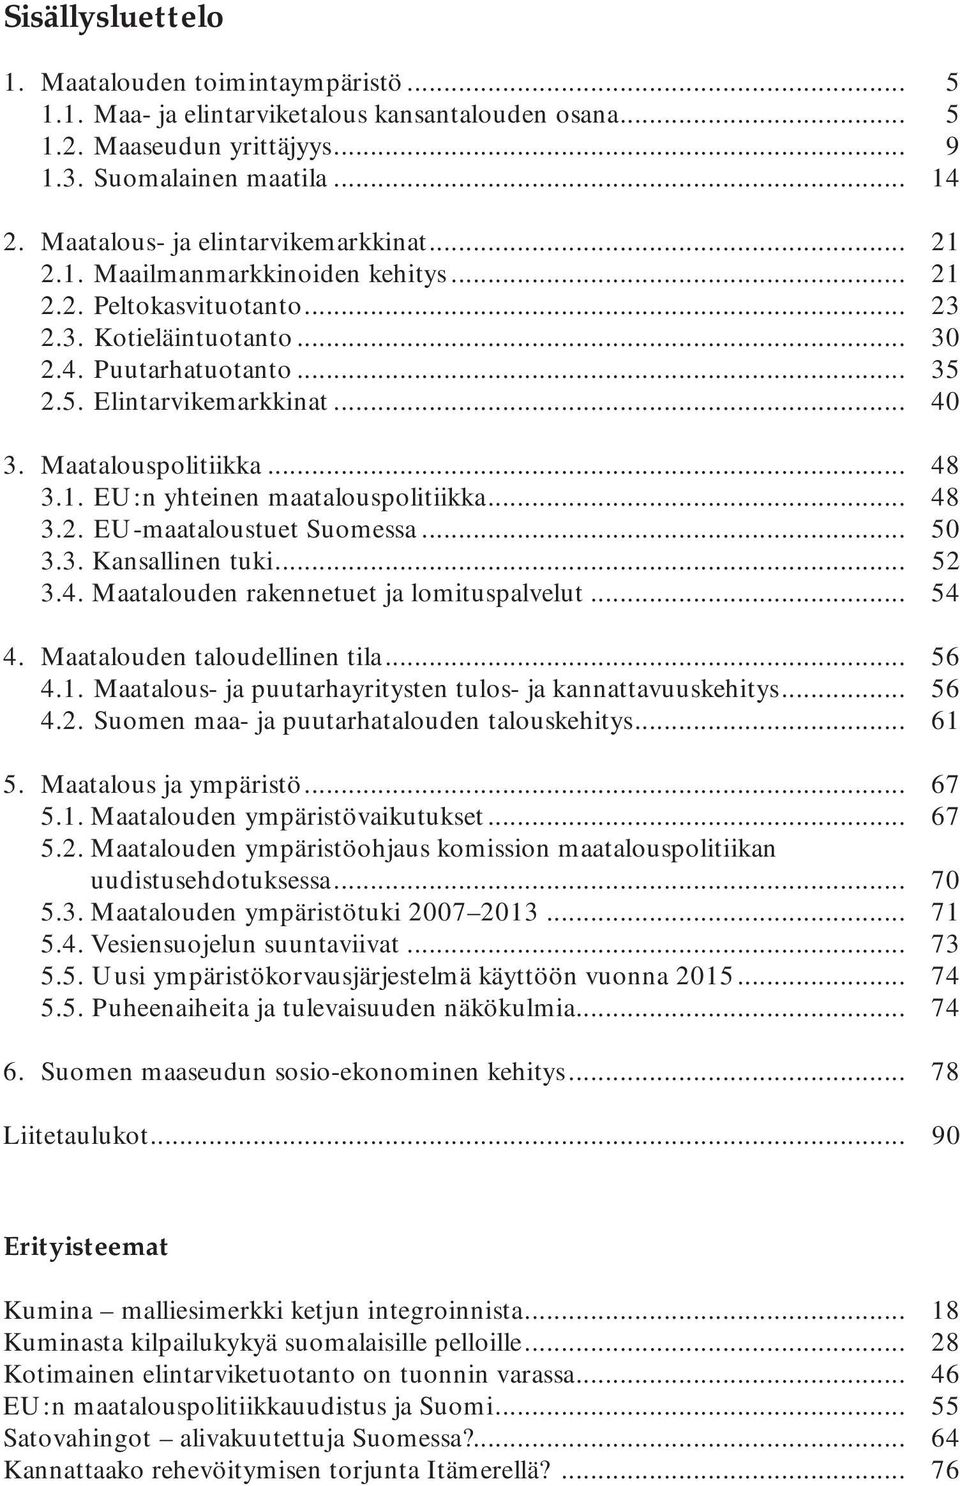 Maatalouspolitiikka... 48 3.1. EU:n yhteinen maatalouspolitiikka... 48 3.2. EU-maataloustuet Suomessa... 50 3.3. Kansallinen tuki... 52 3.4. Maatalouden rakennetuet ja lomituspalvelut... 54 4.